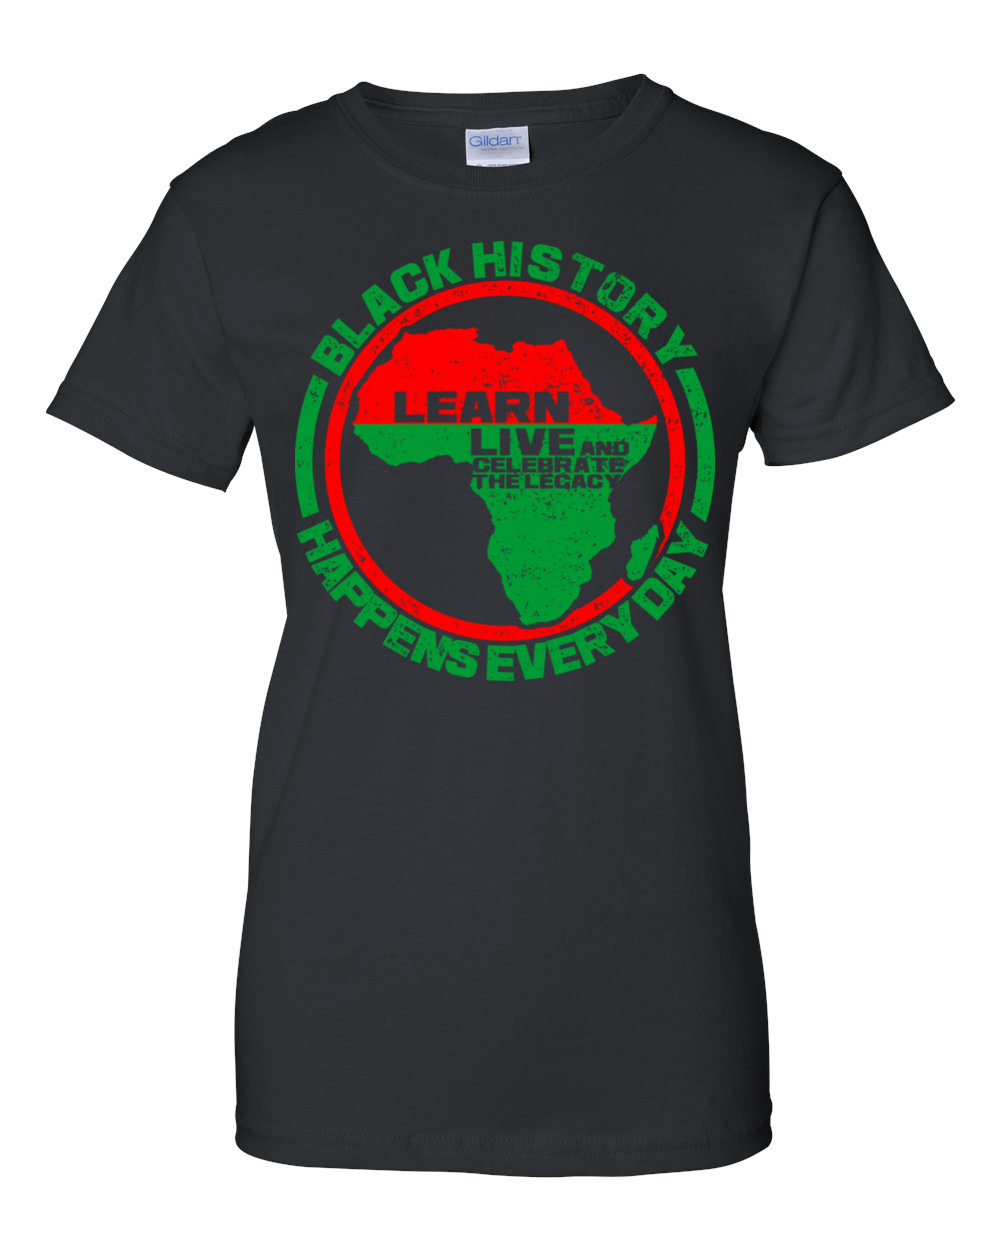 Black History Happens Everyday Women's T-Shirt by RBG Forever (Black)